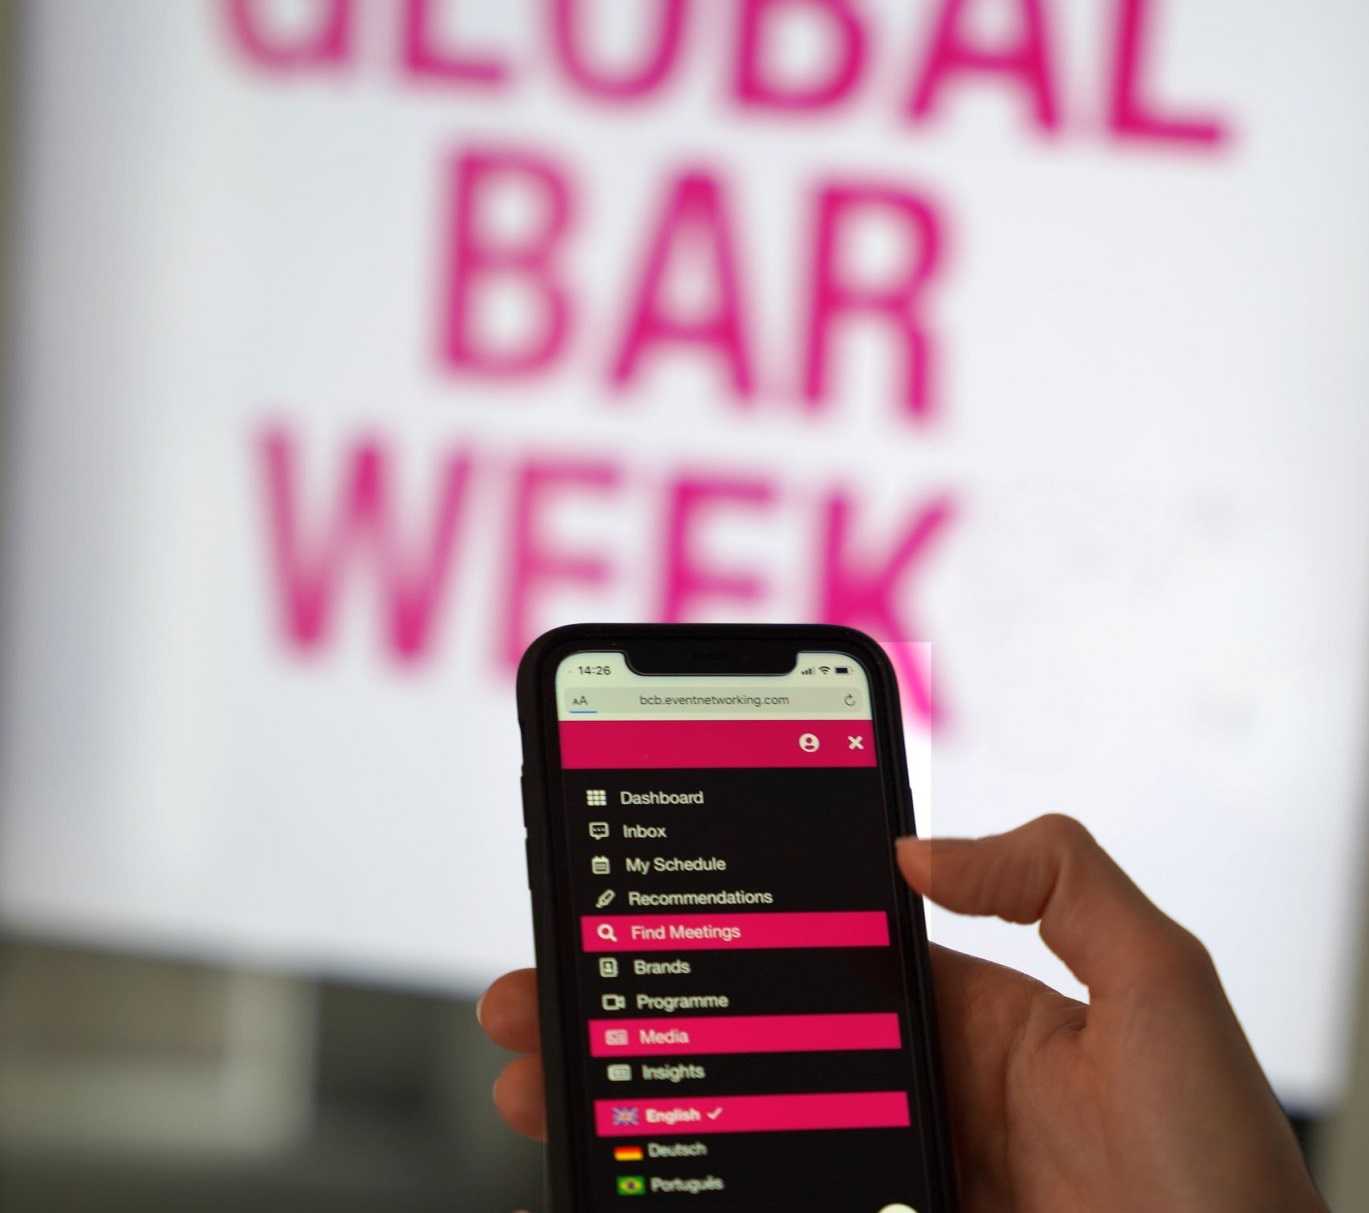 Global Bar Week